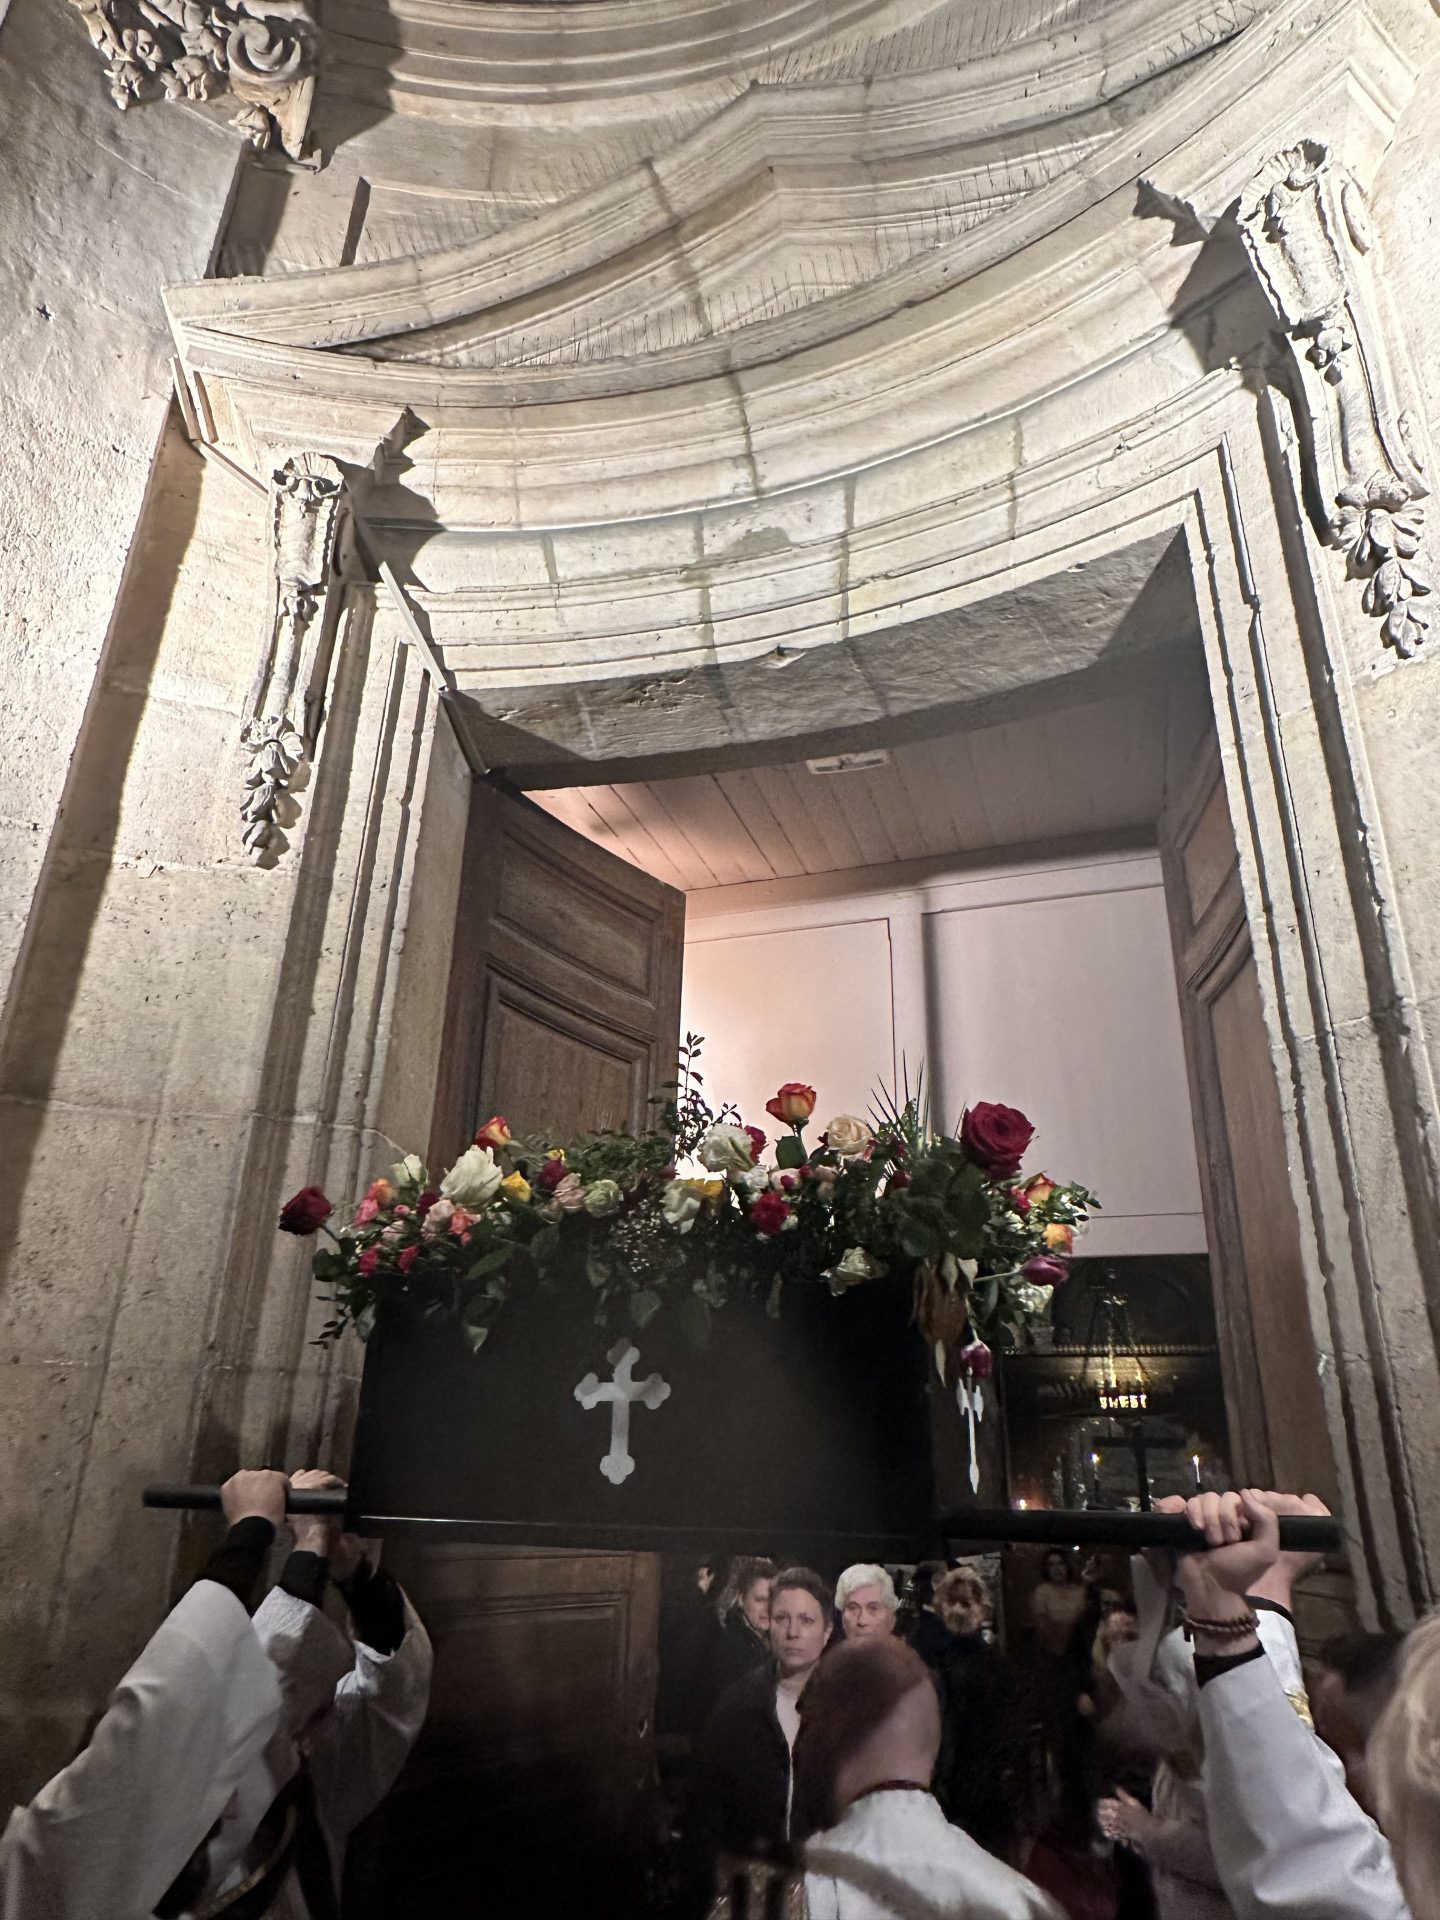 Vendredi saint: rite de l’enterrement du Christ chez les syriaques catholiques